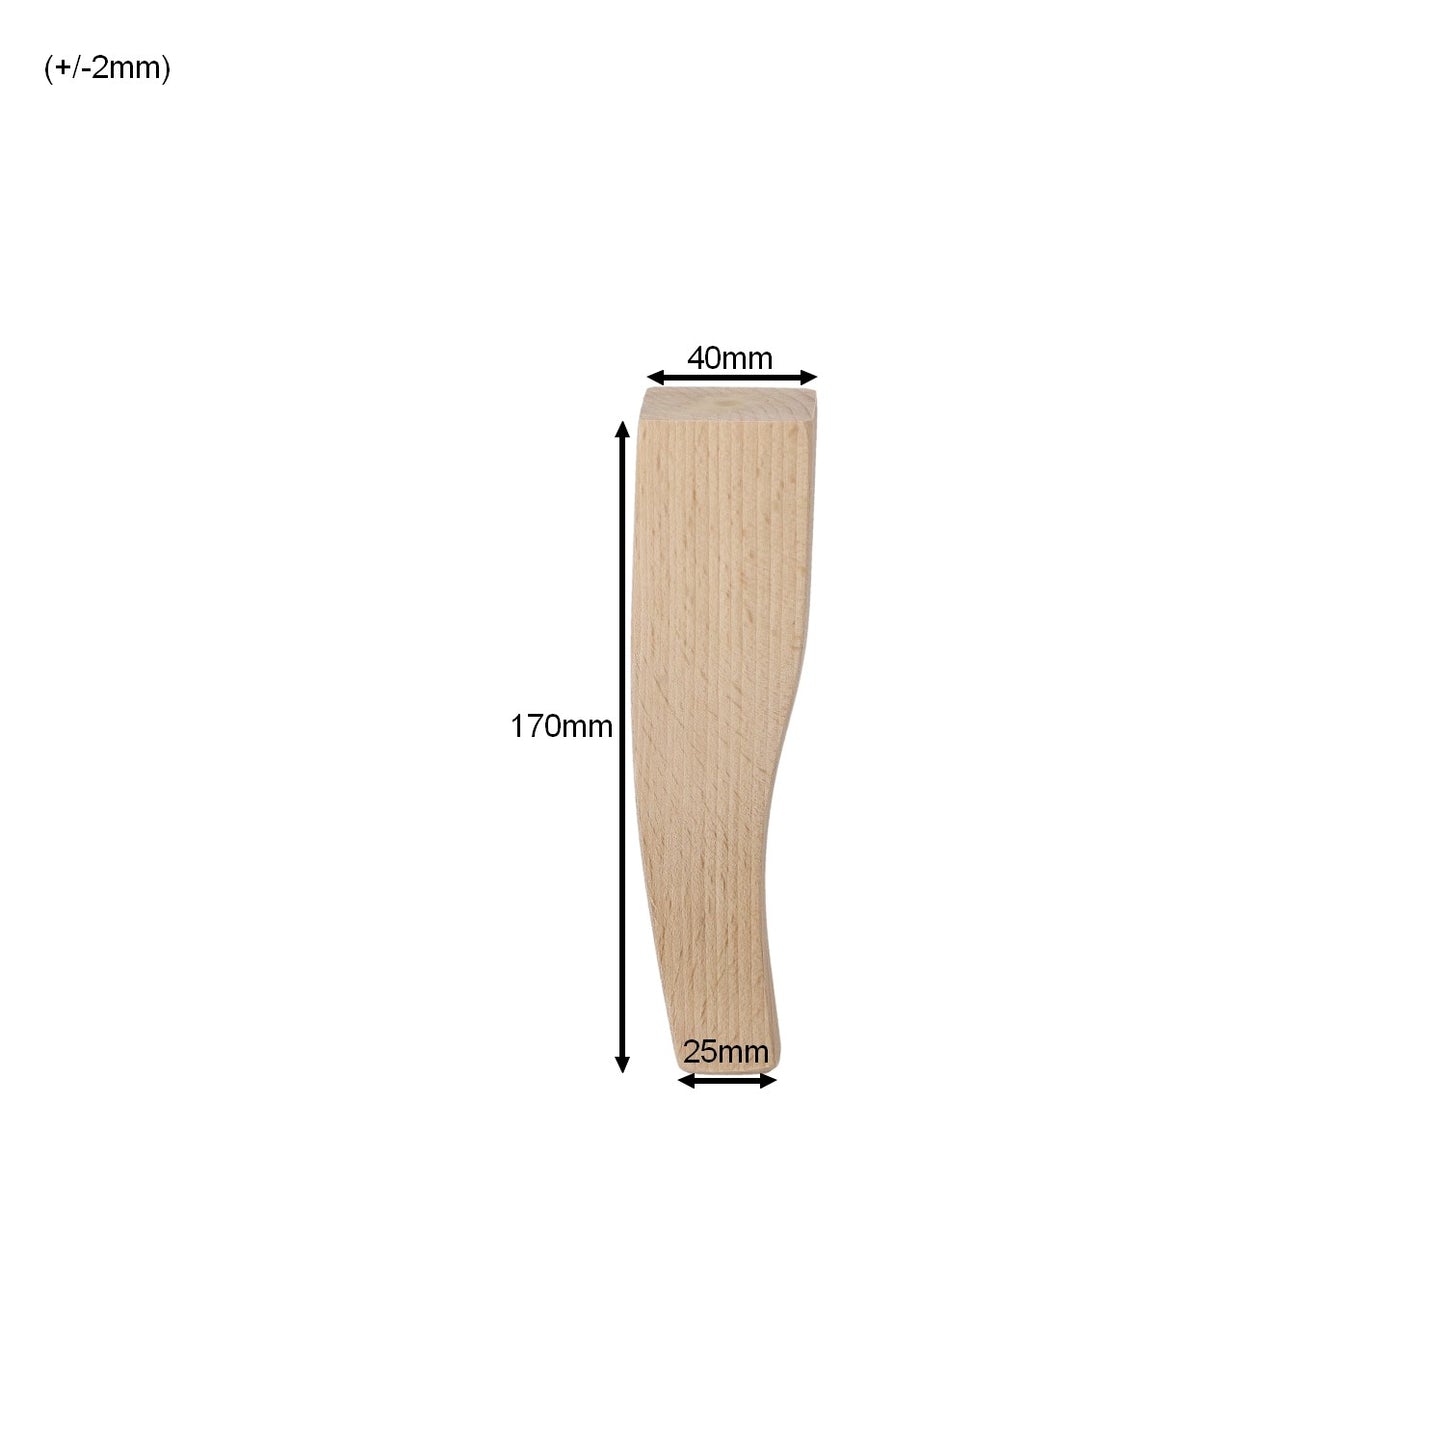 Möbelfüße aus Holz in 4 Varianten